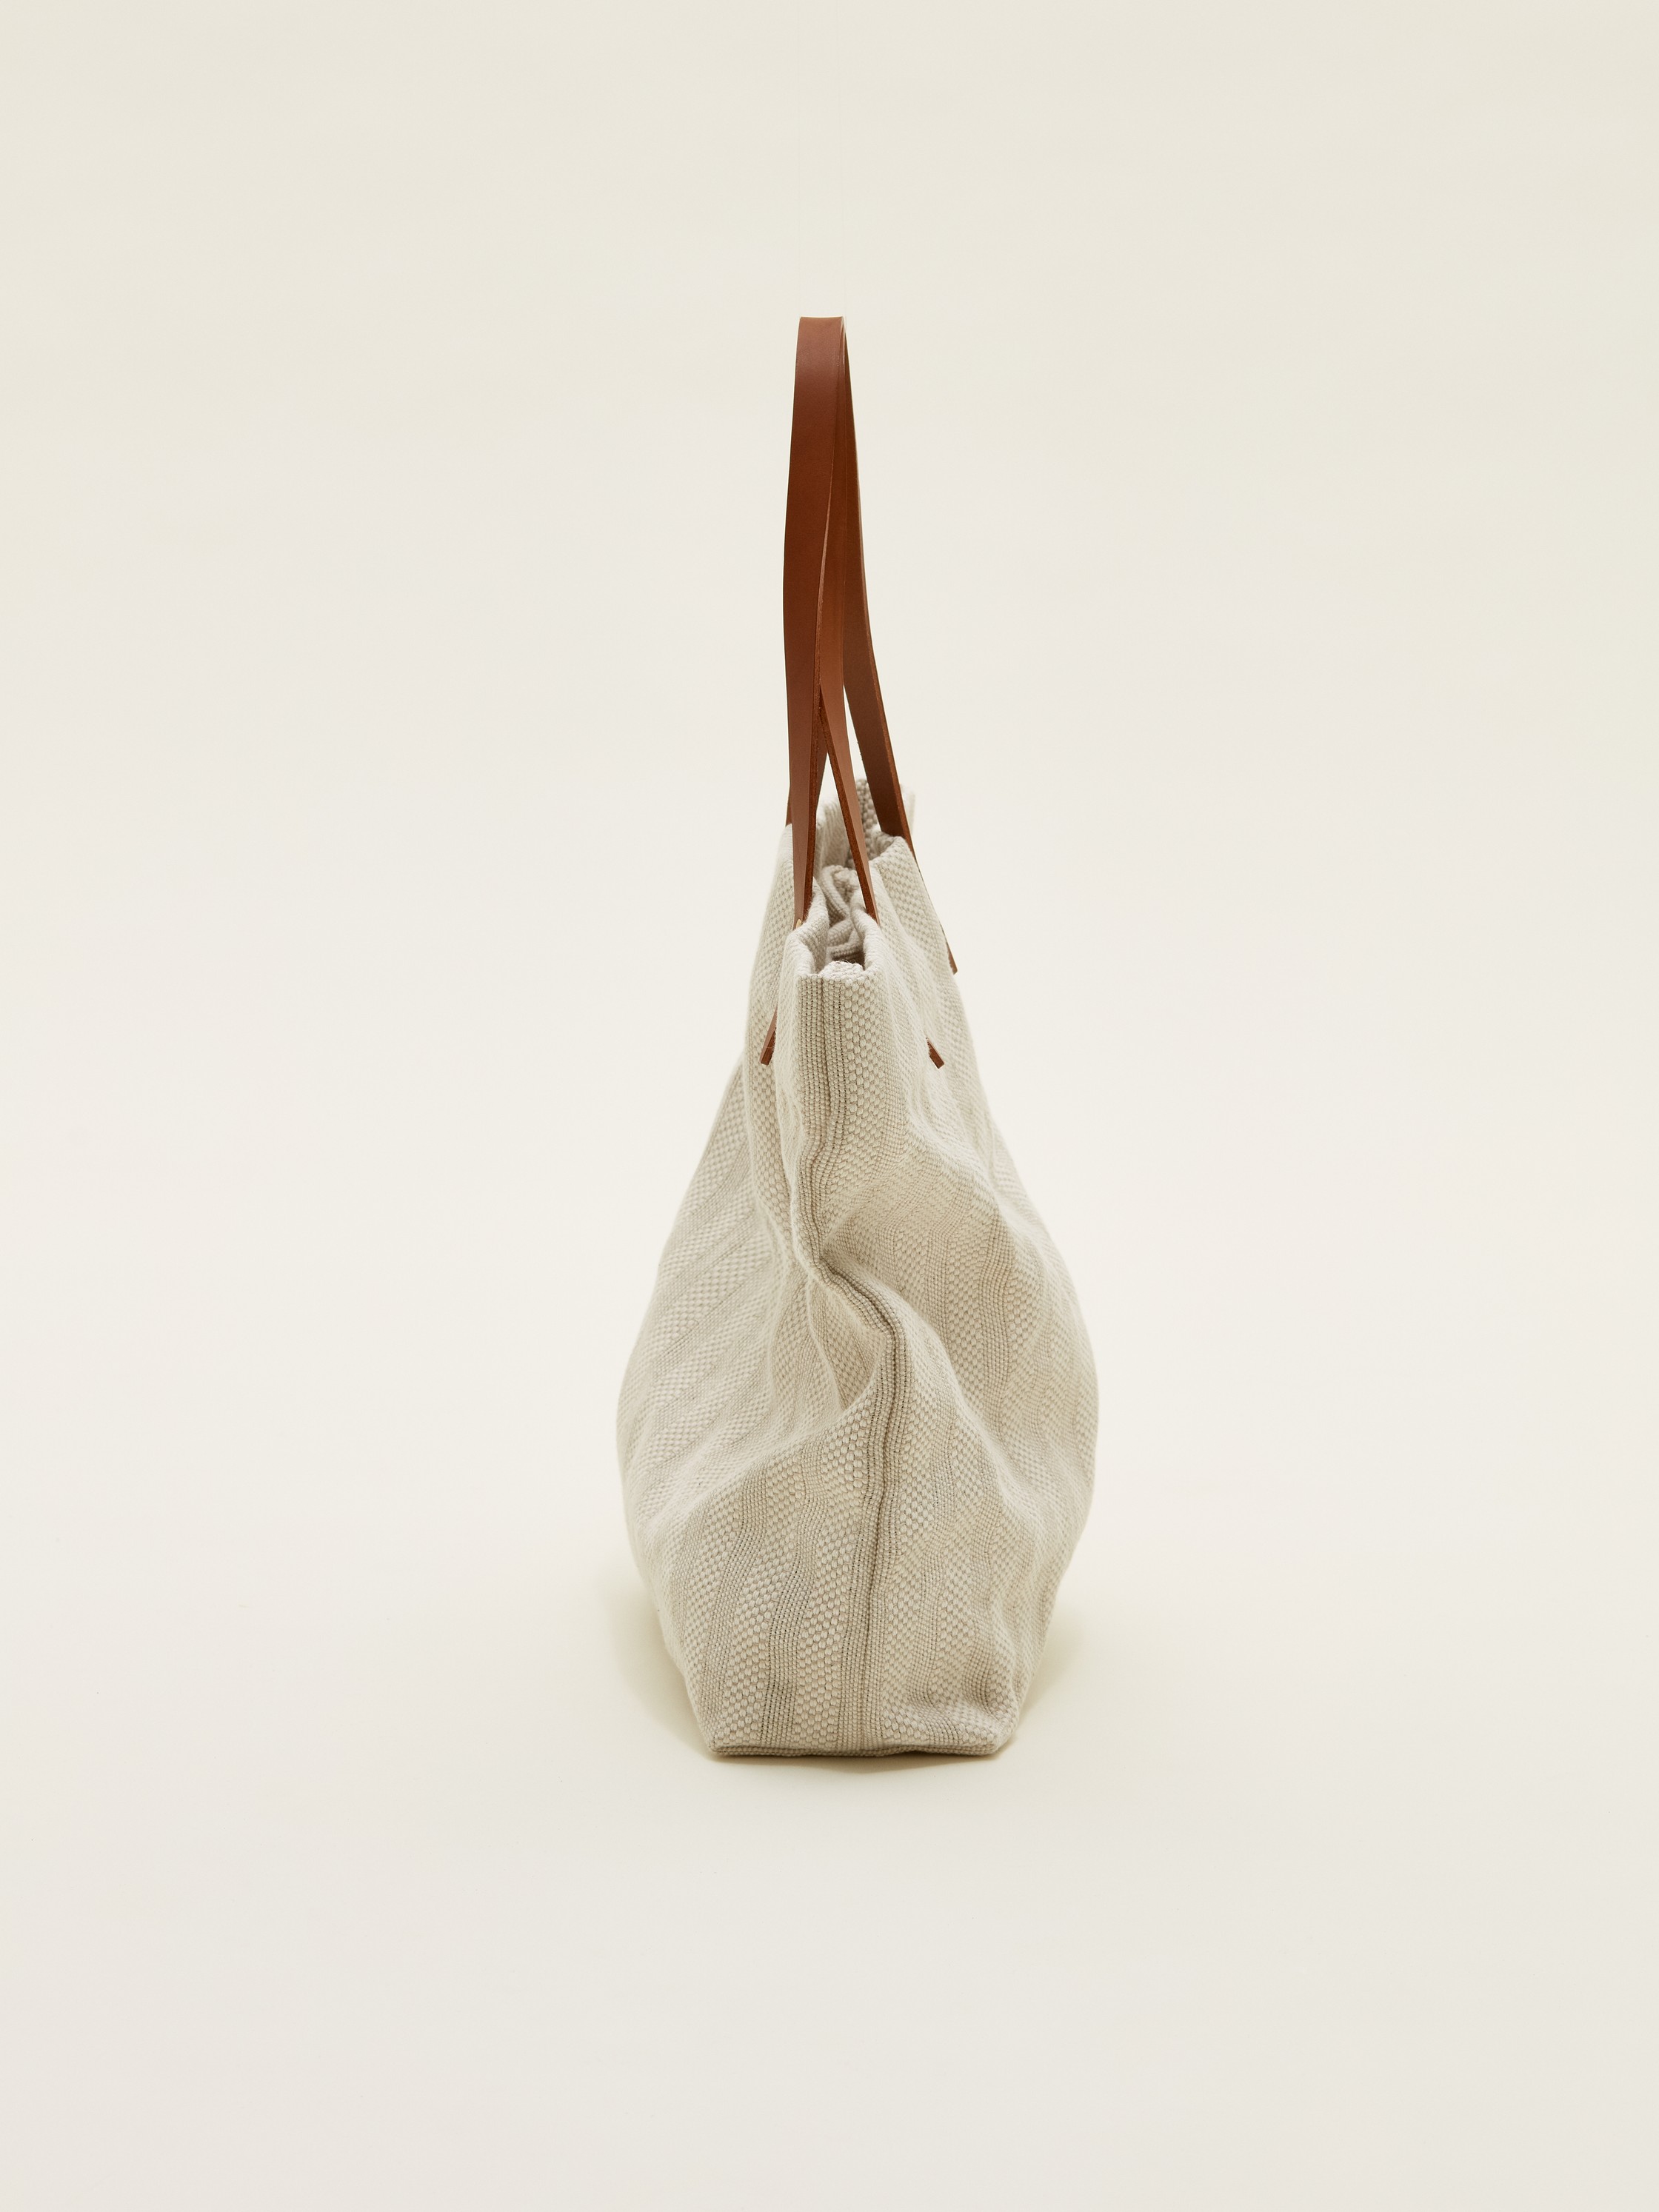 Tote bag - Steve Mono - Bags - Shop | Monocle